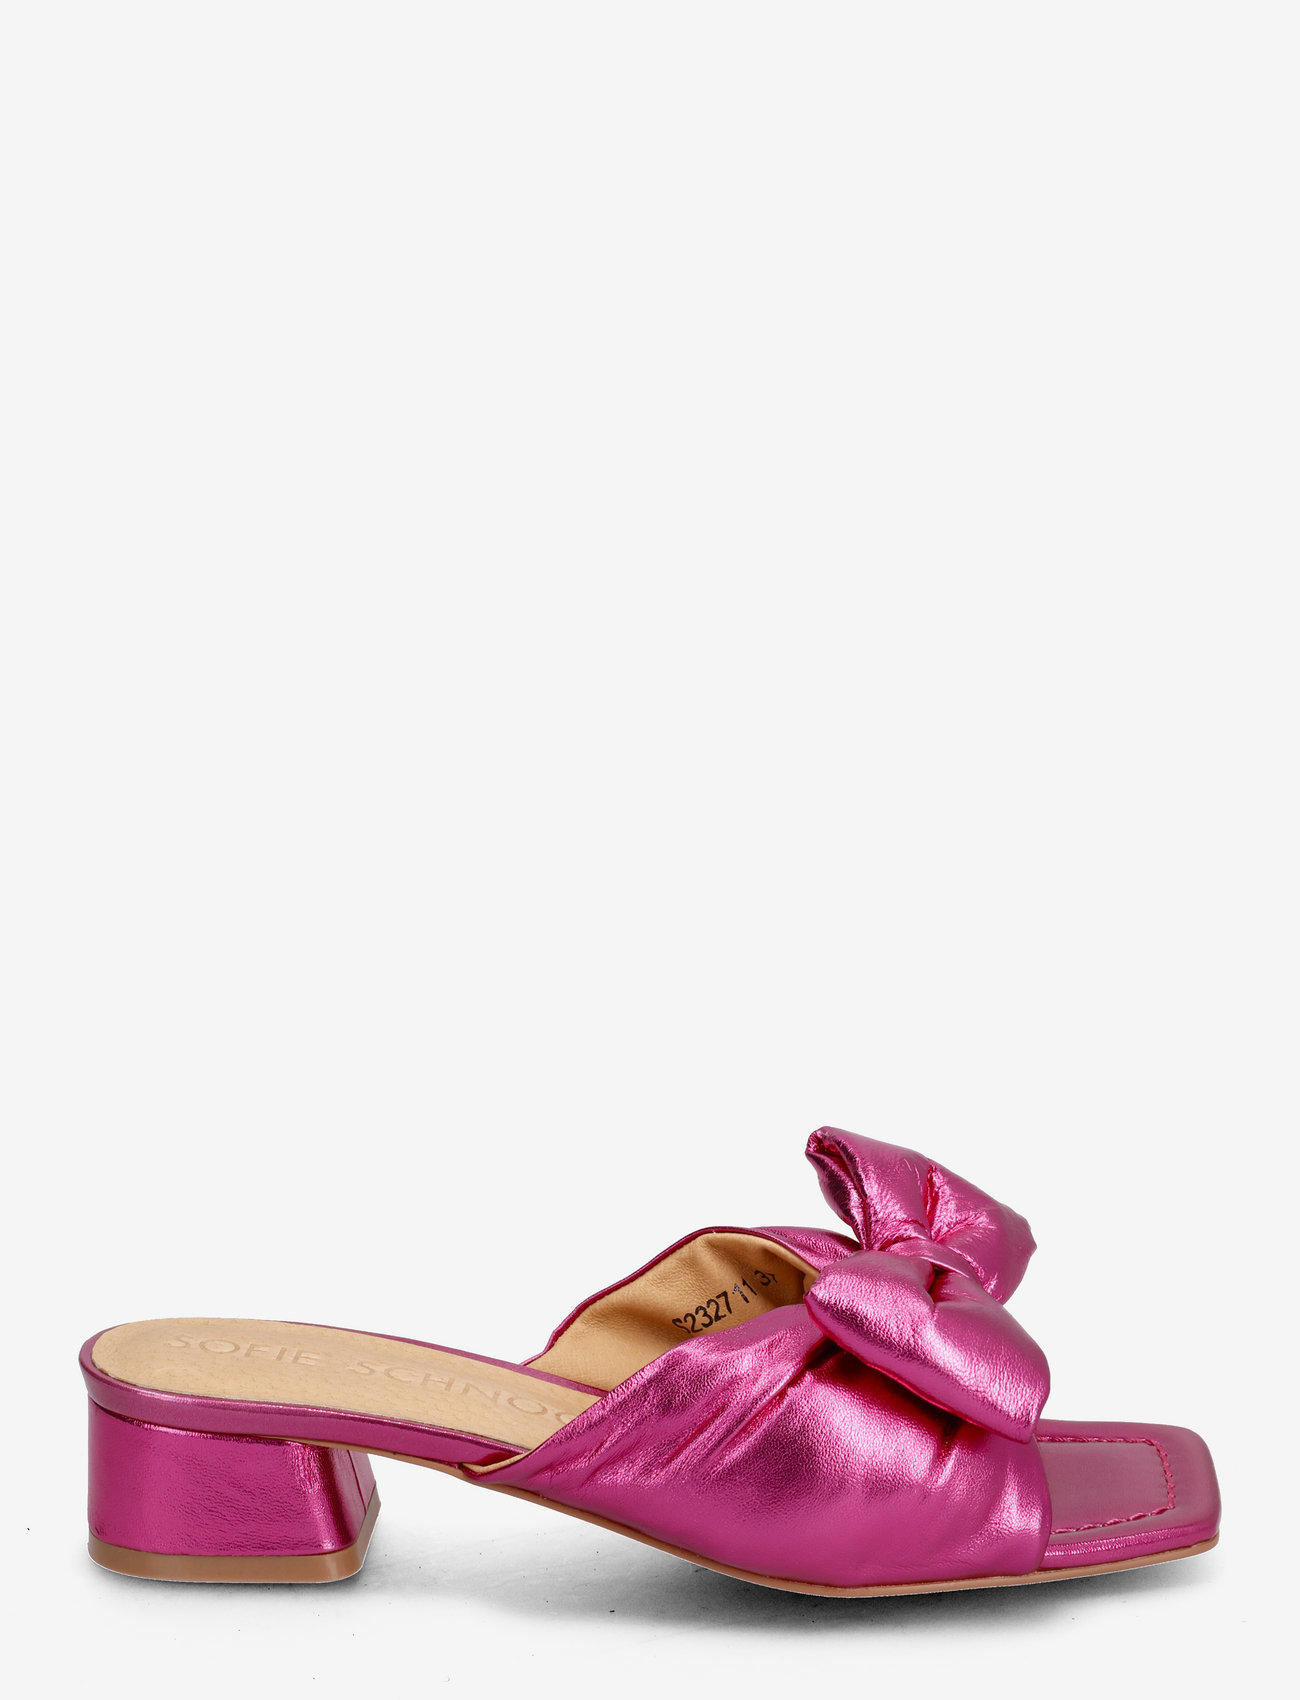 Sofie Schnoor - Stiletto - buty z odkrytą piętą na płaskim obcasie - pink - 1